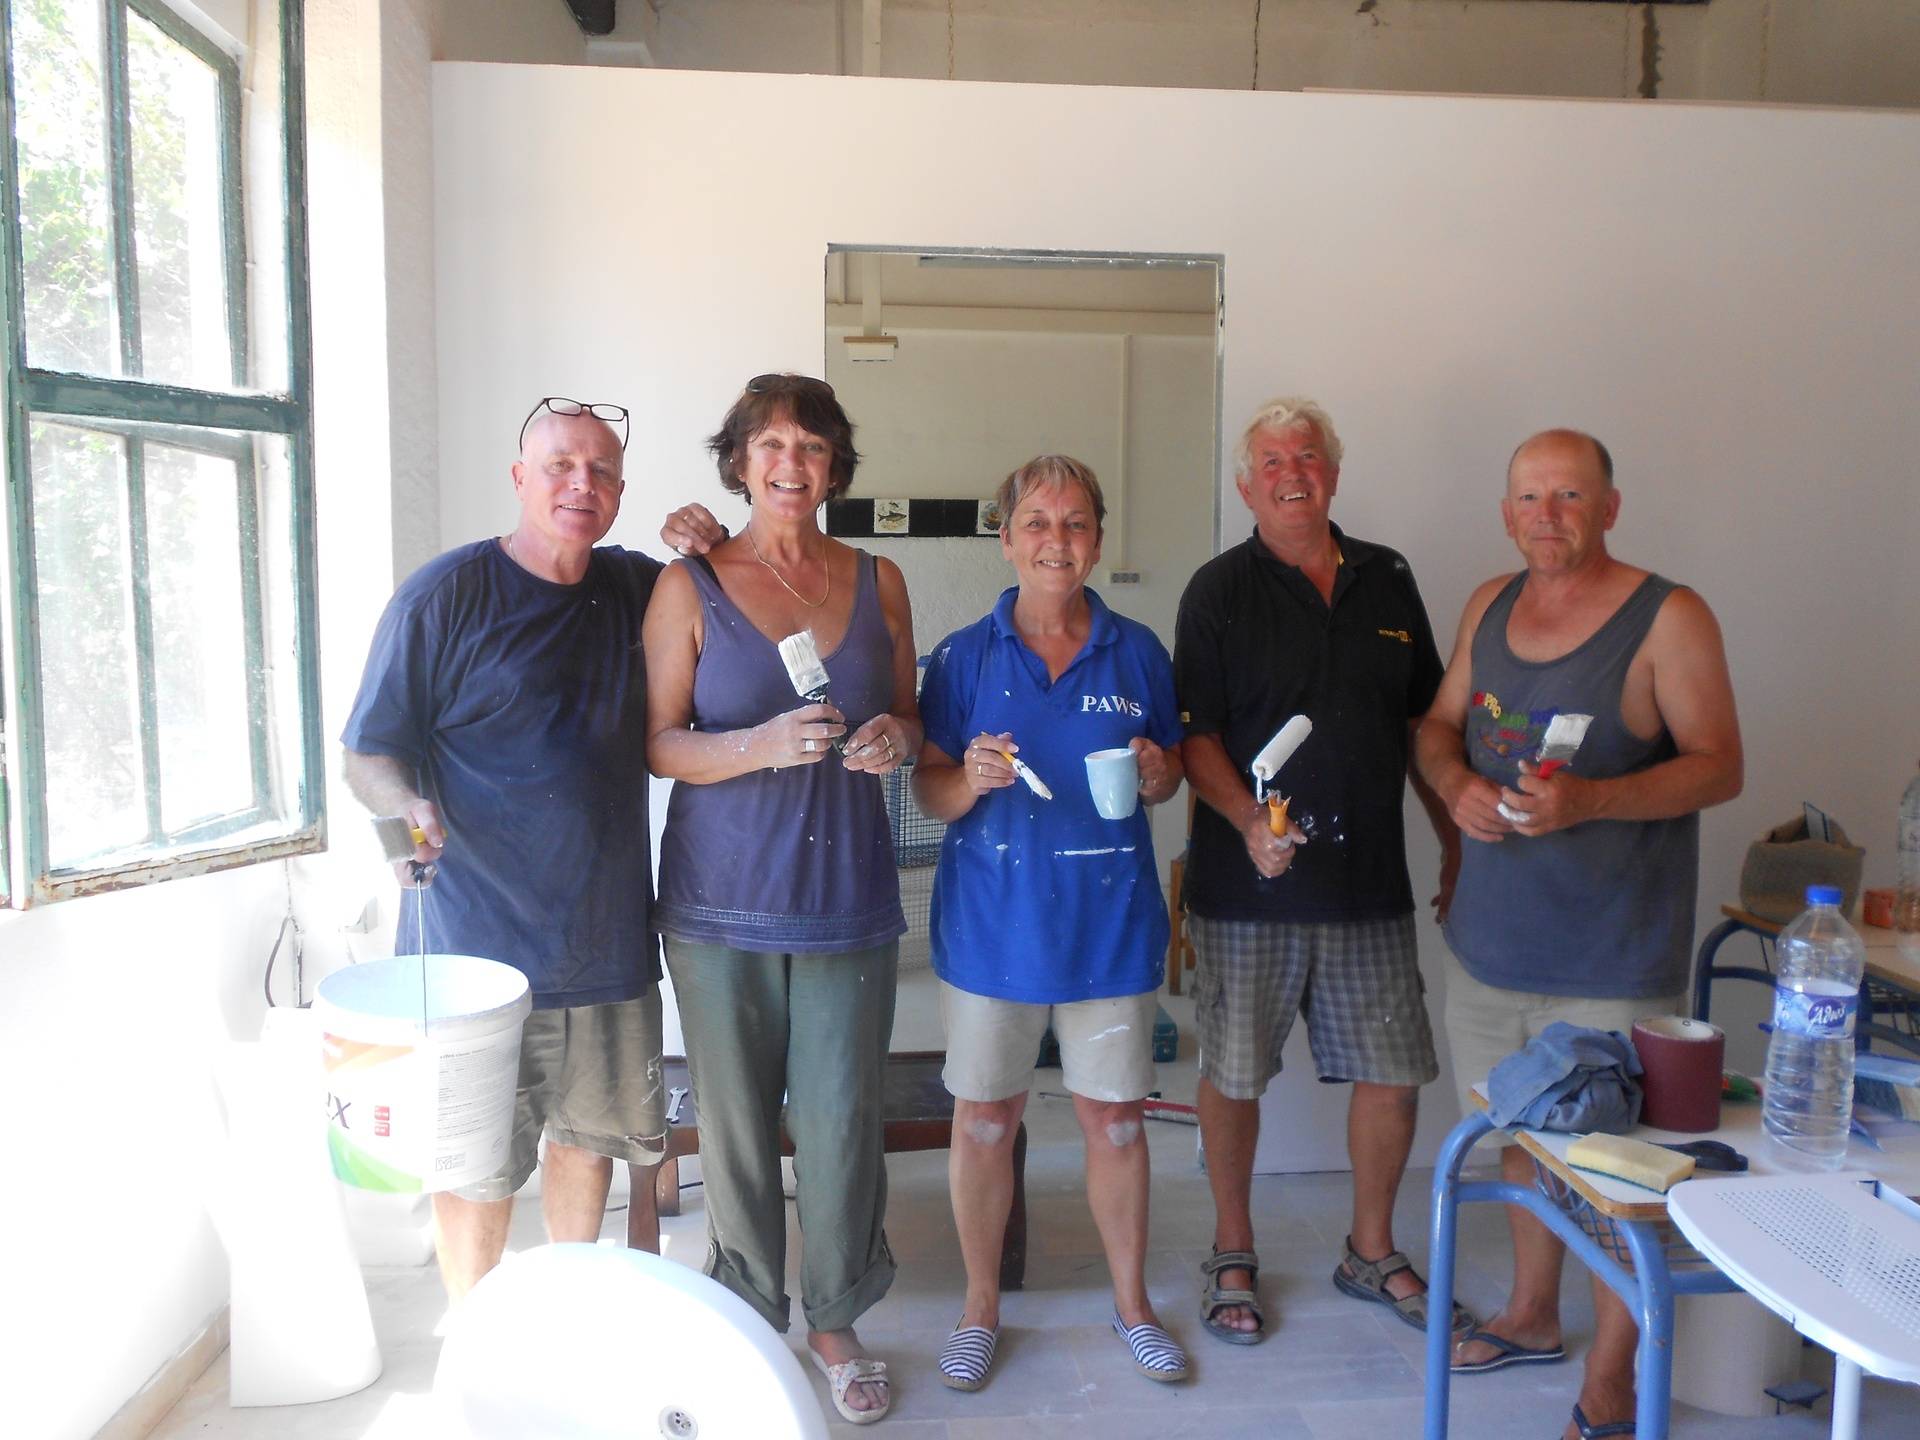 The volunteer painting team